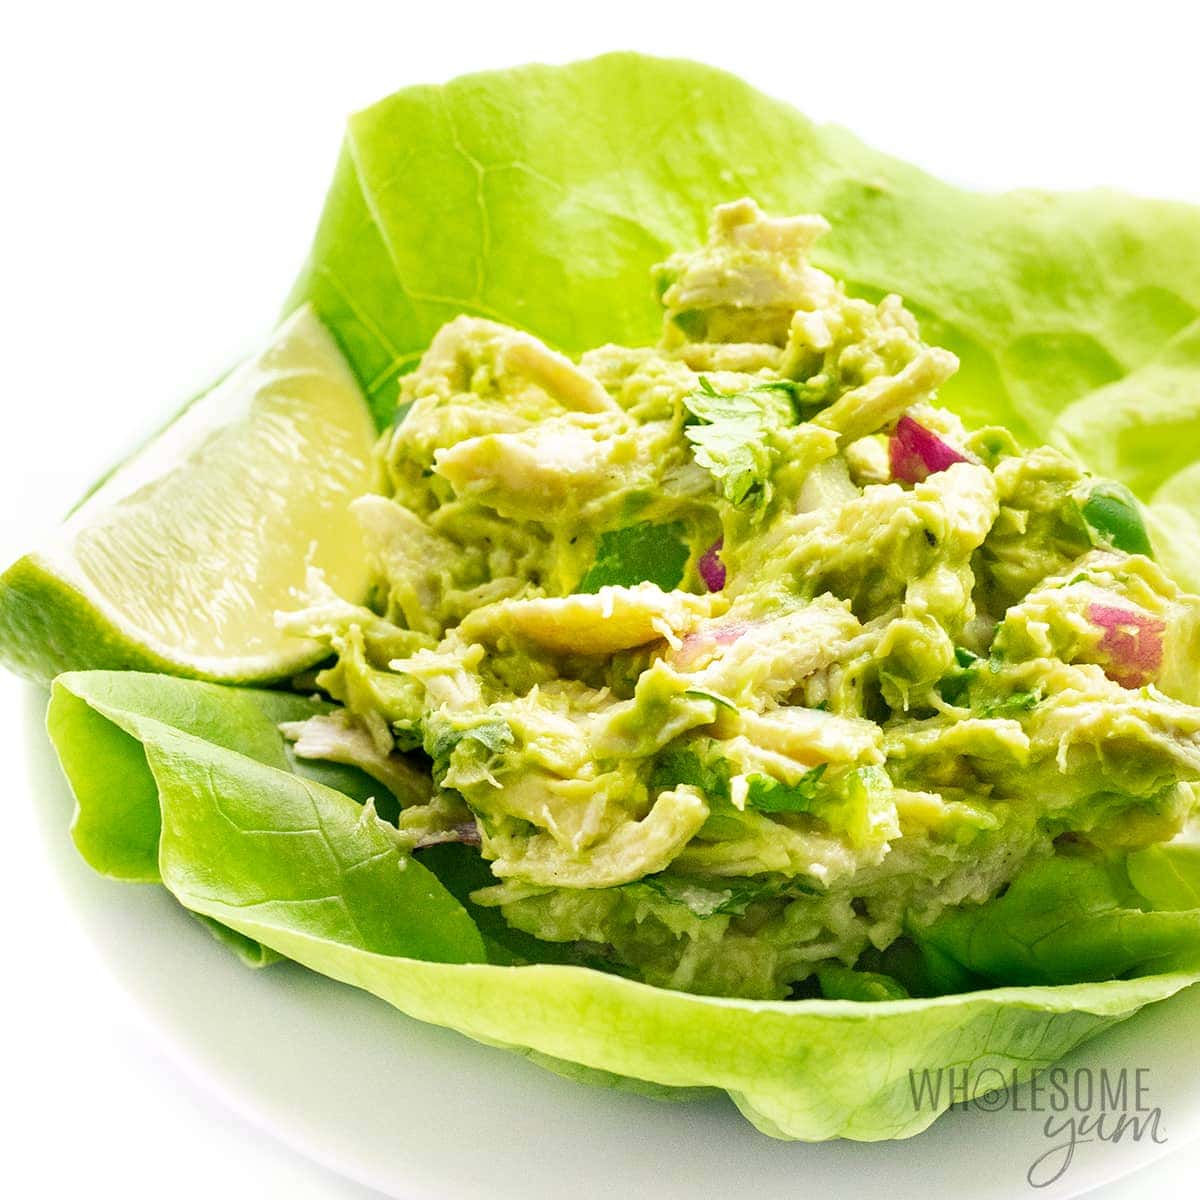 Avocado chicken salad recipe in a lettuce wrap